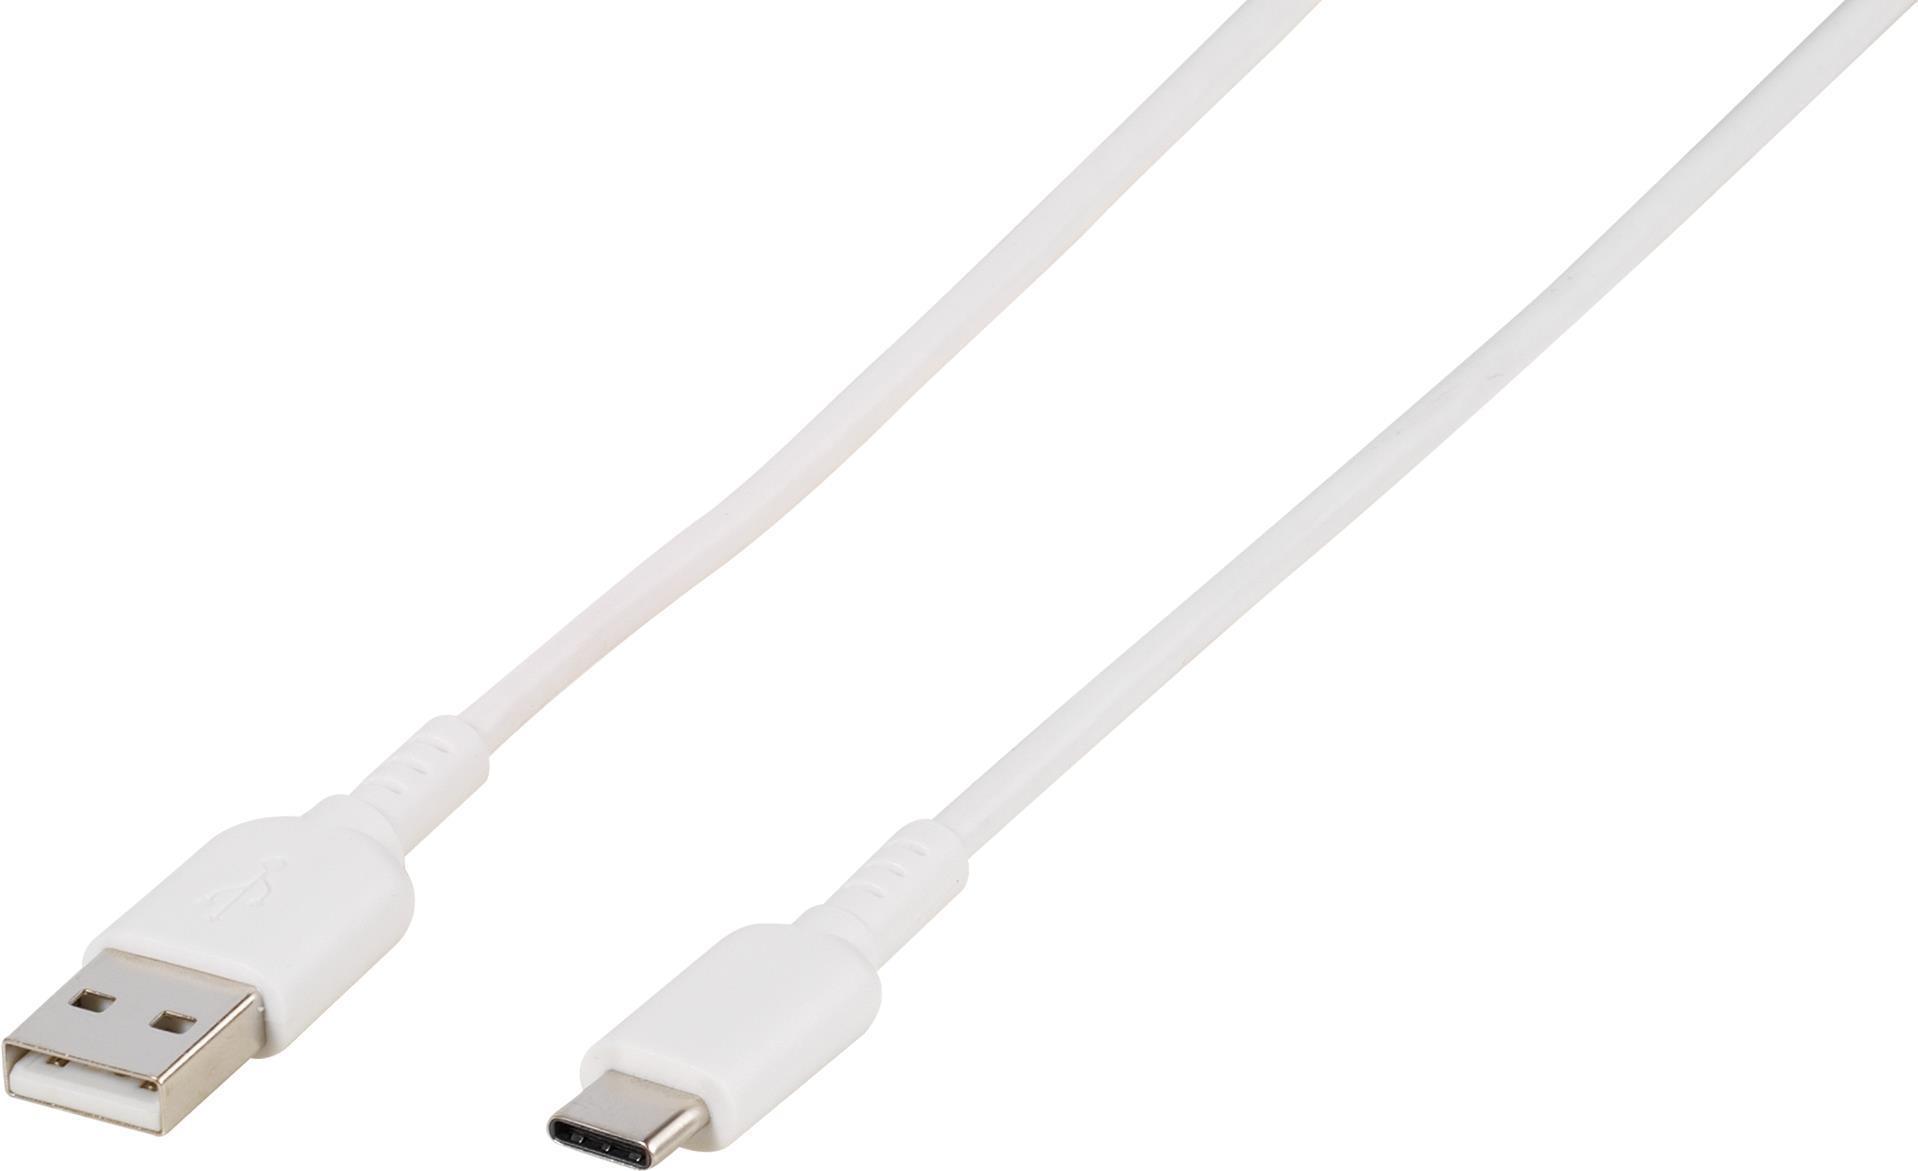 Vivanco USB 2.0 Anschlusskabel [1x USB 2.0 Stecker C - 1x USB 2.0 Stecker A] 1.50 m Weiß Rund (45209)